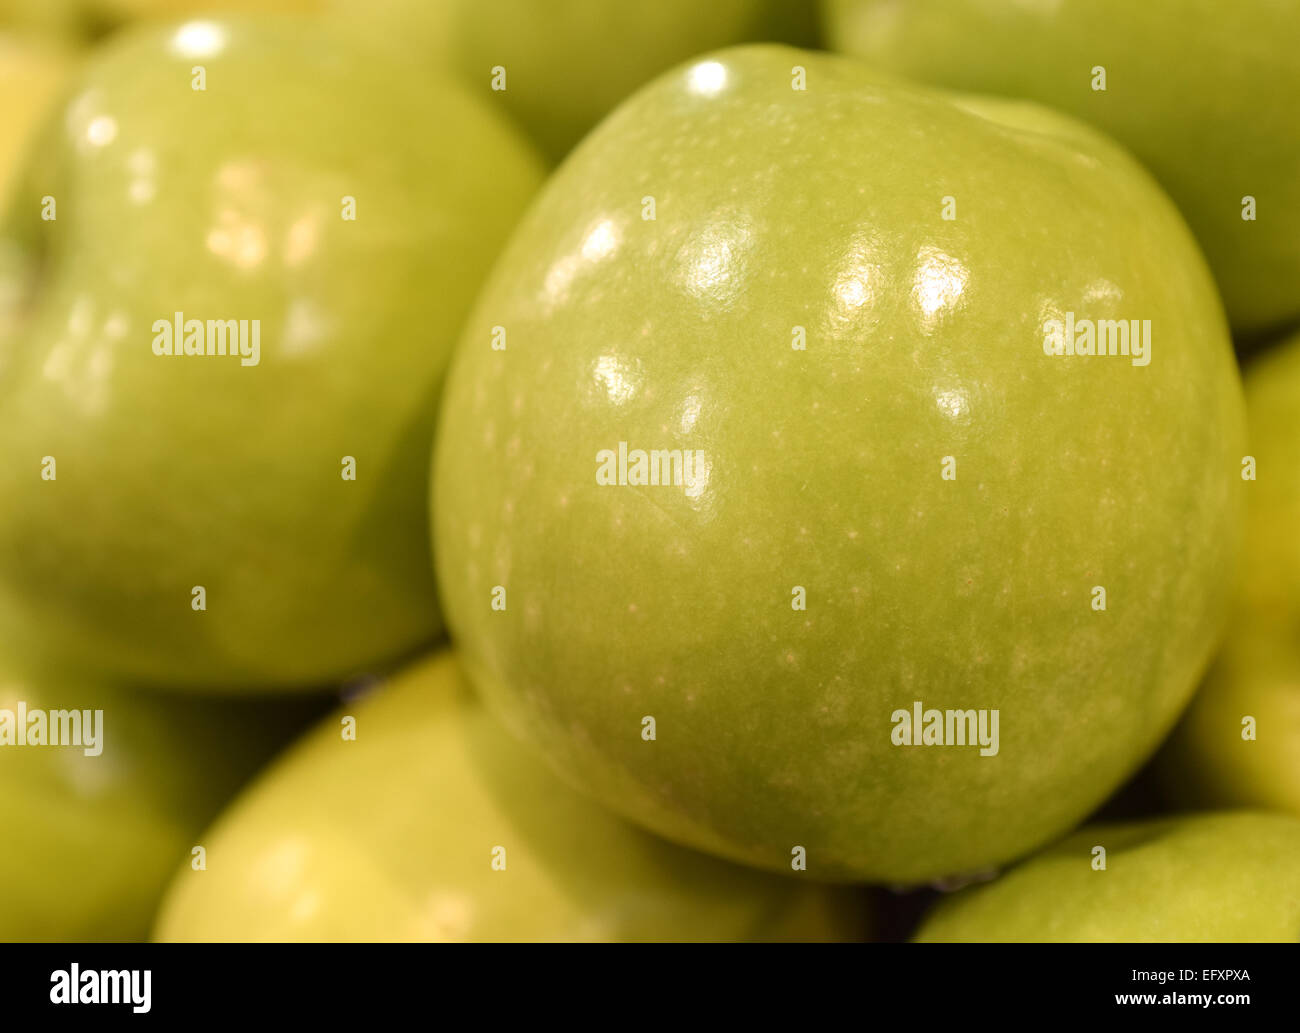 Schöne gelbe frische Äpfel, Obst, wurden ausgewählt, um fotografiert zu werden Stockfoto